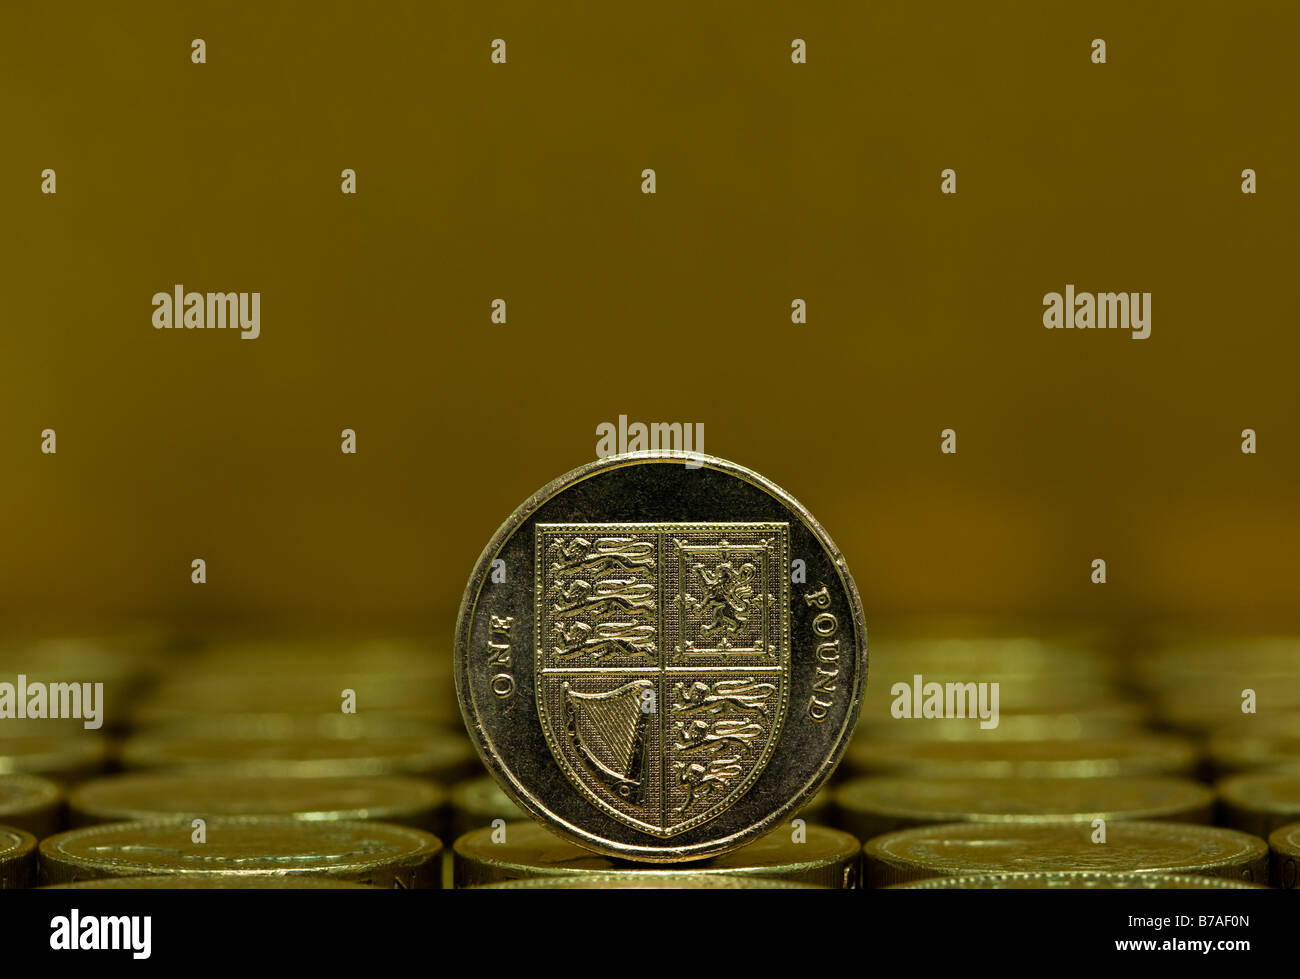 British Pound monedas, la moneda del Reino Unido, Europa Foto de stock